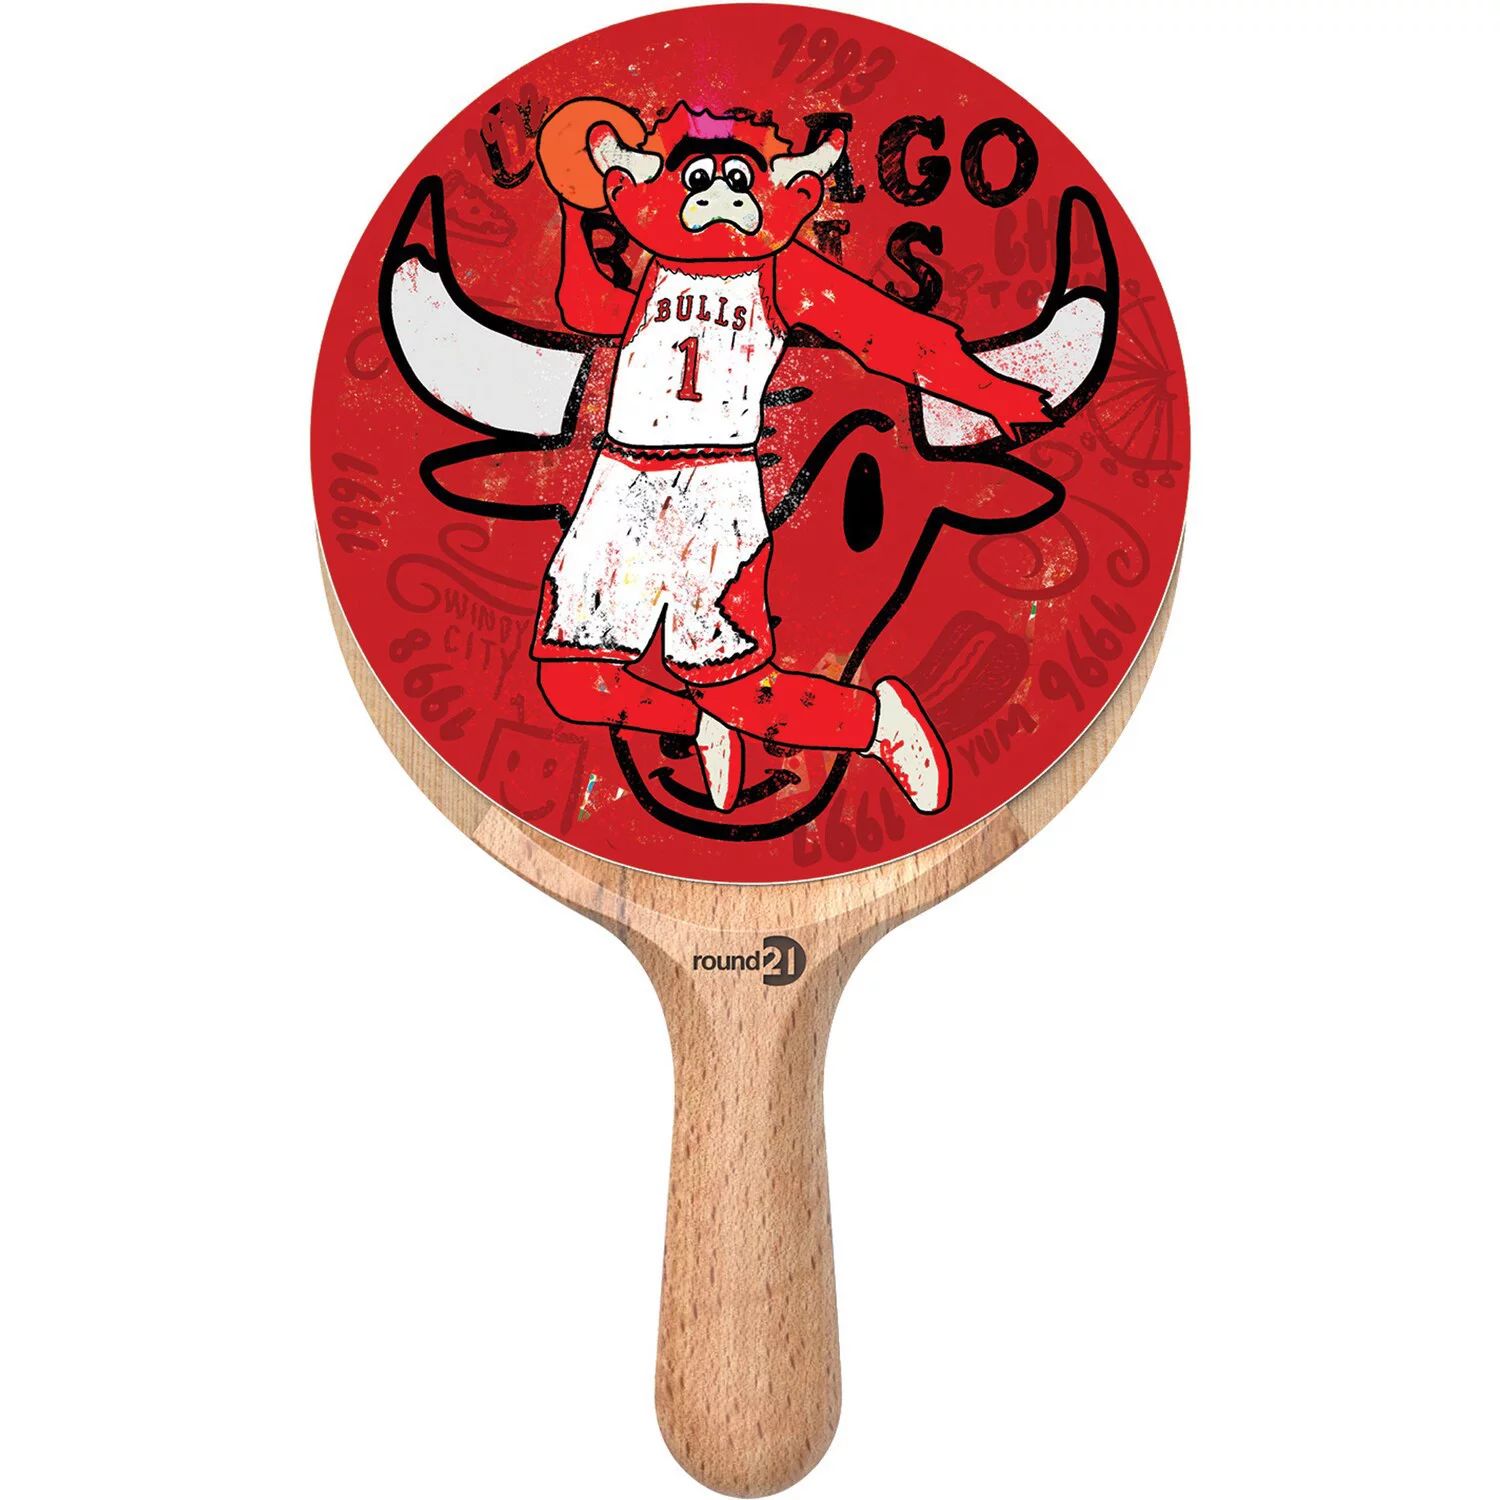 Ракетка для настольного тенниса Chicago Bulls Unbranded спортивный инвентарь atemi ракетка для настольного тенниса 300 cv